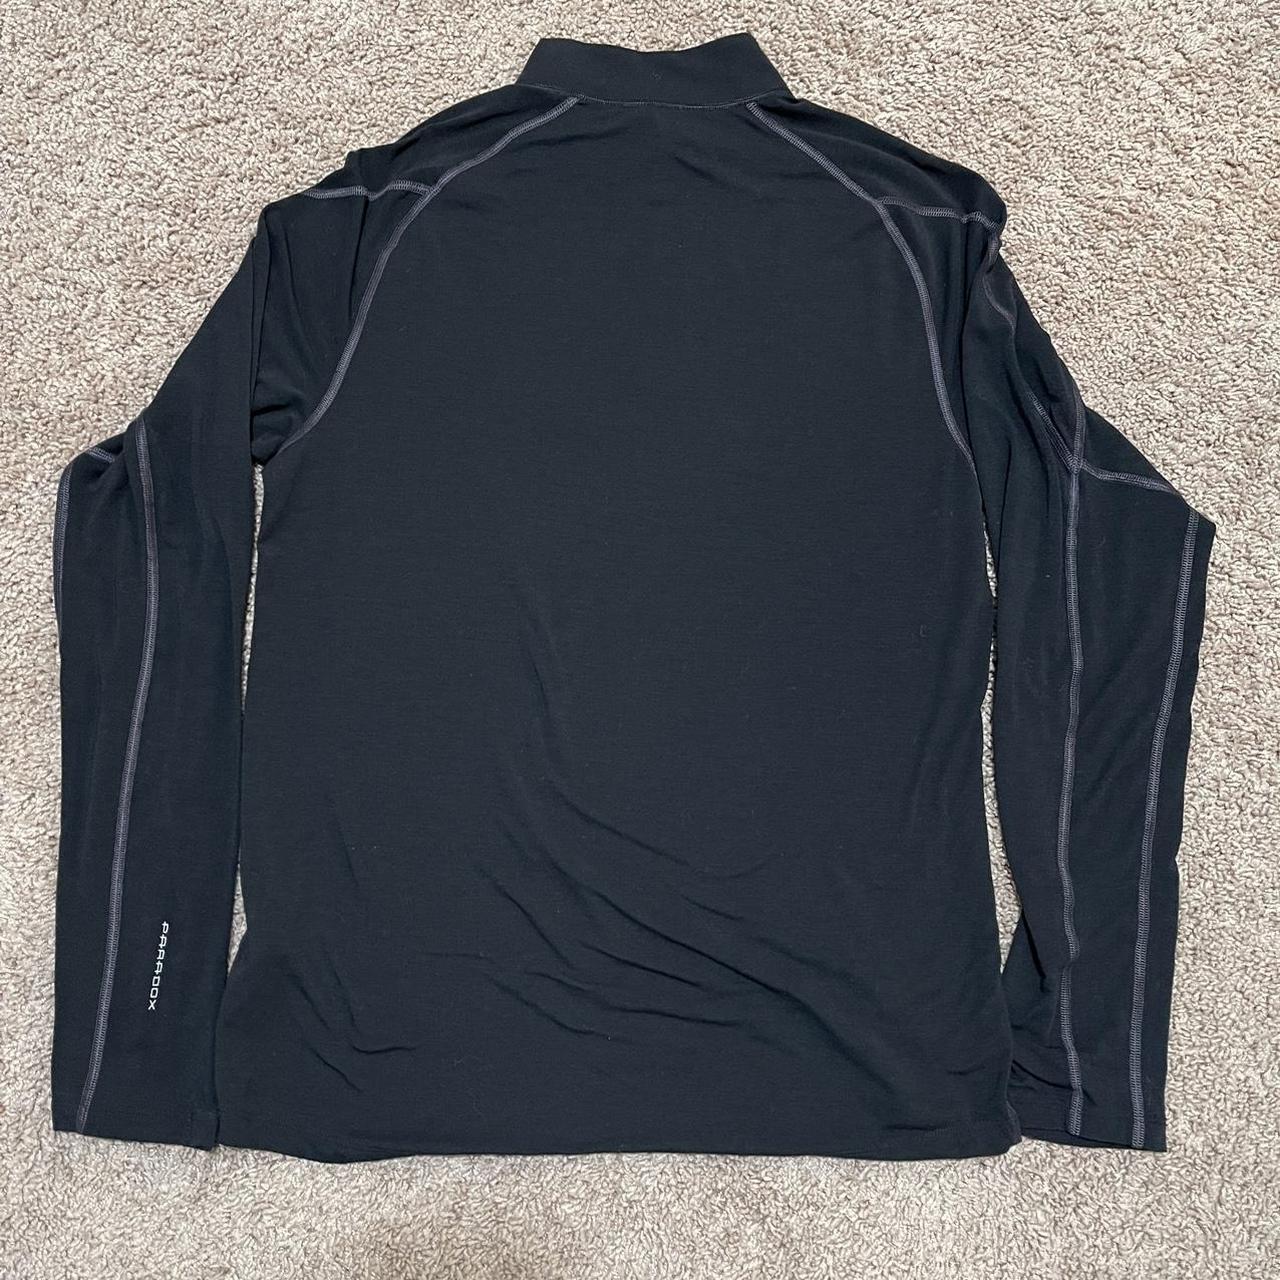 Paradox Merino Wool Blend 1/4 Zip Base Layer Shirt - Depop